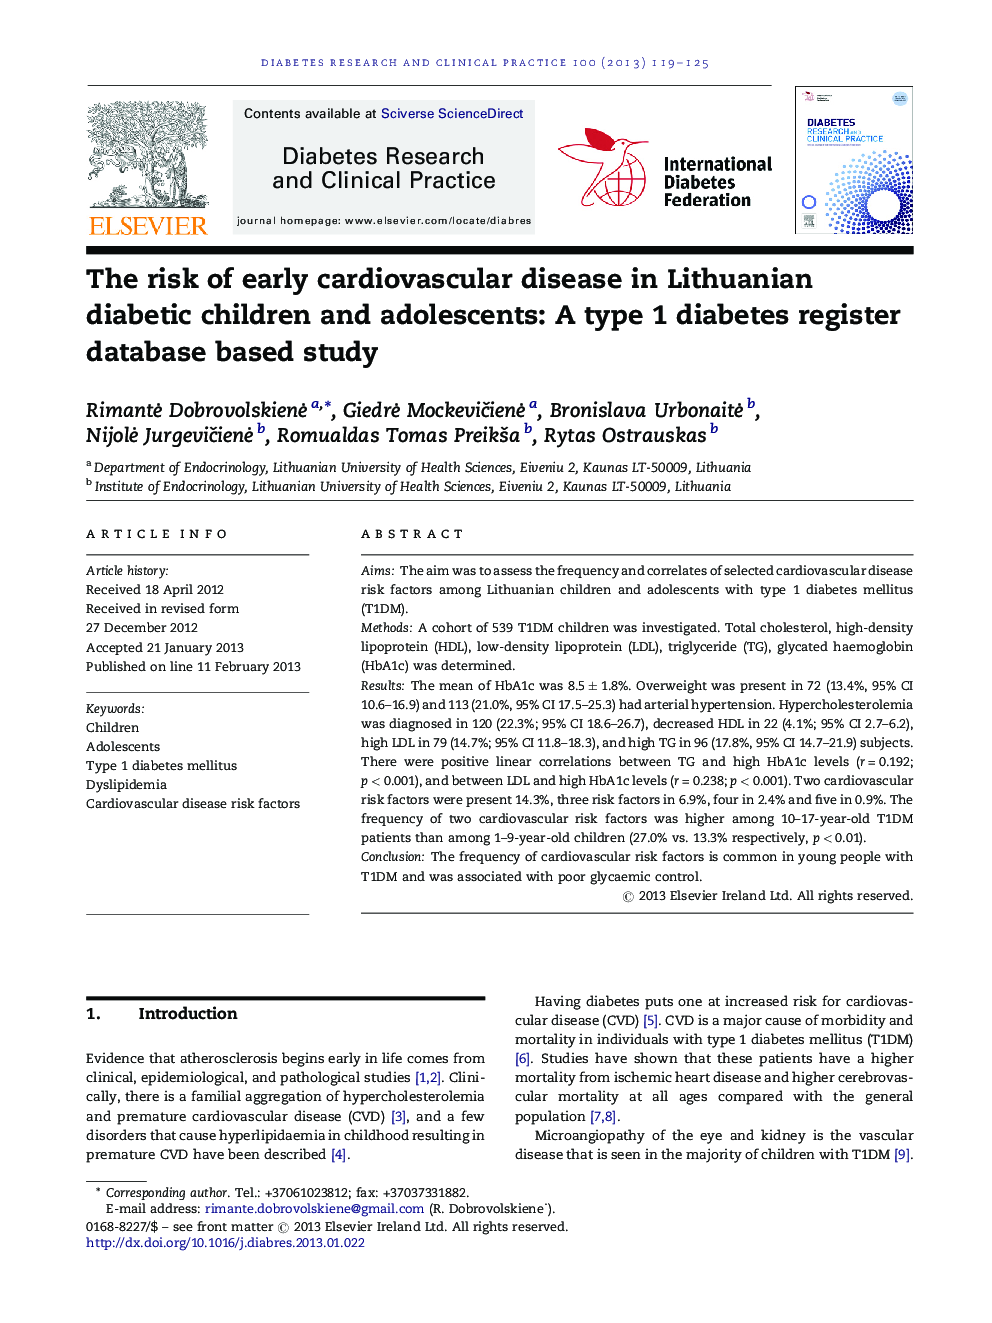 خطر ابتلا به بیماریهای قلبی عروقی در کودکان و نوجوانان دیابتی لیتوانی: یک مطالعه مبتنی بر پایگاه داده مبتنی بر دیابت نوع 1 